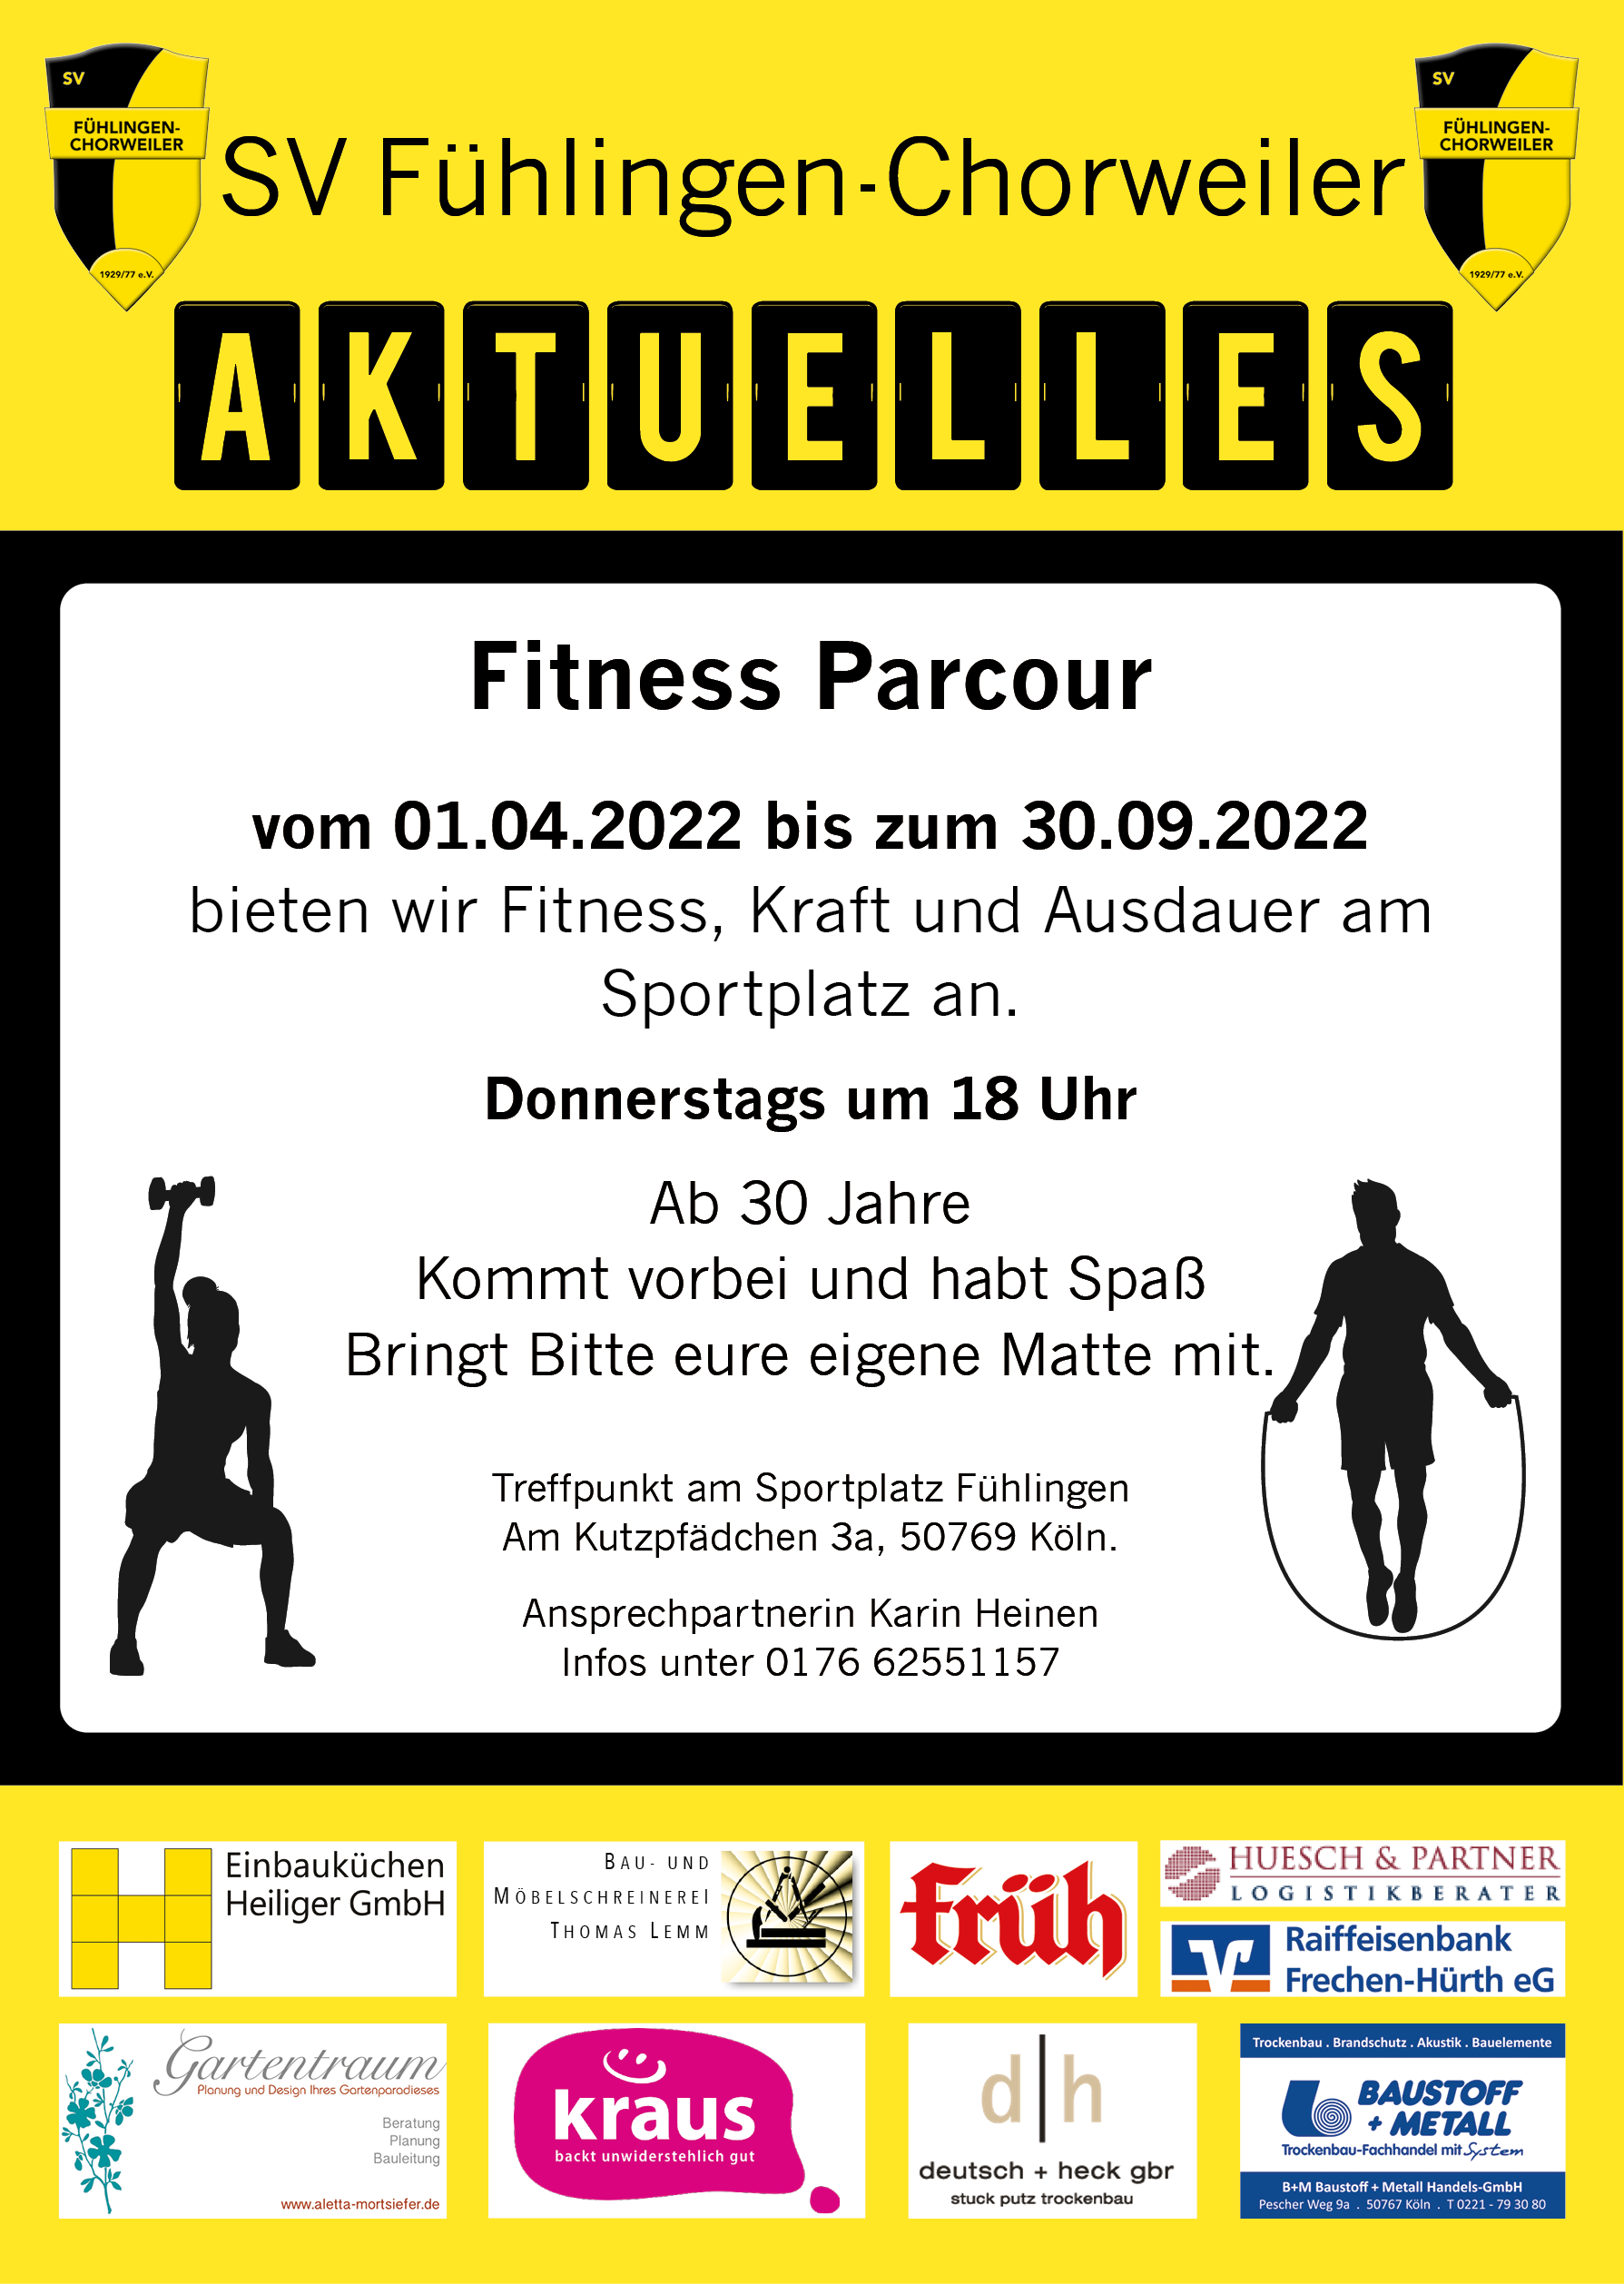 Aktuelles_FitnessParcour_2022